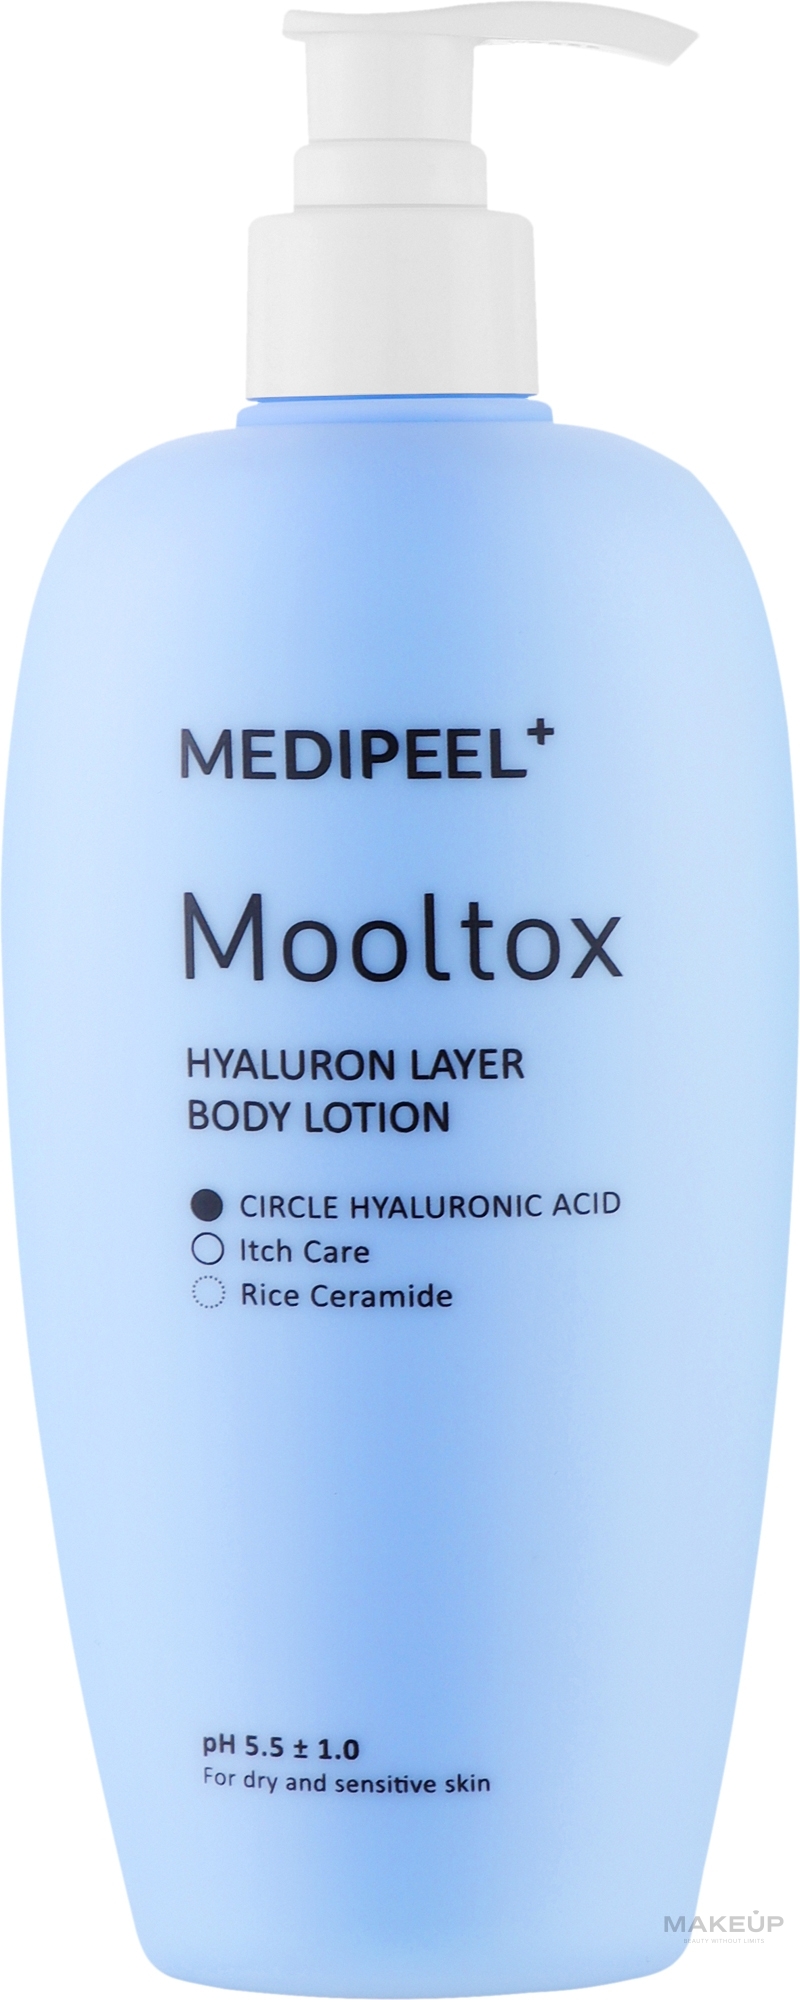 Зволожувальний лосьйон для тіла - MEDIPEEL Hyaluron Layer Body Lotion Mooltox — фото 400ml